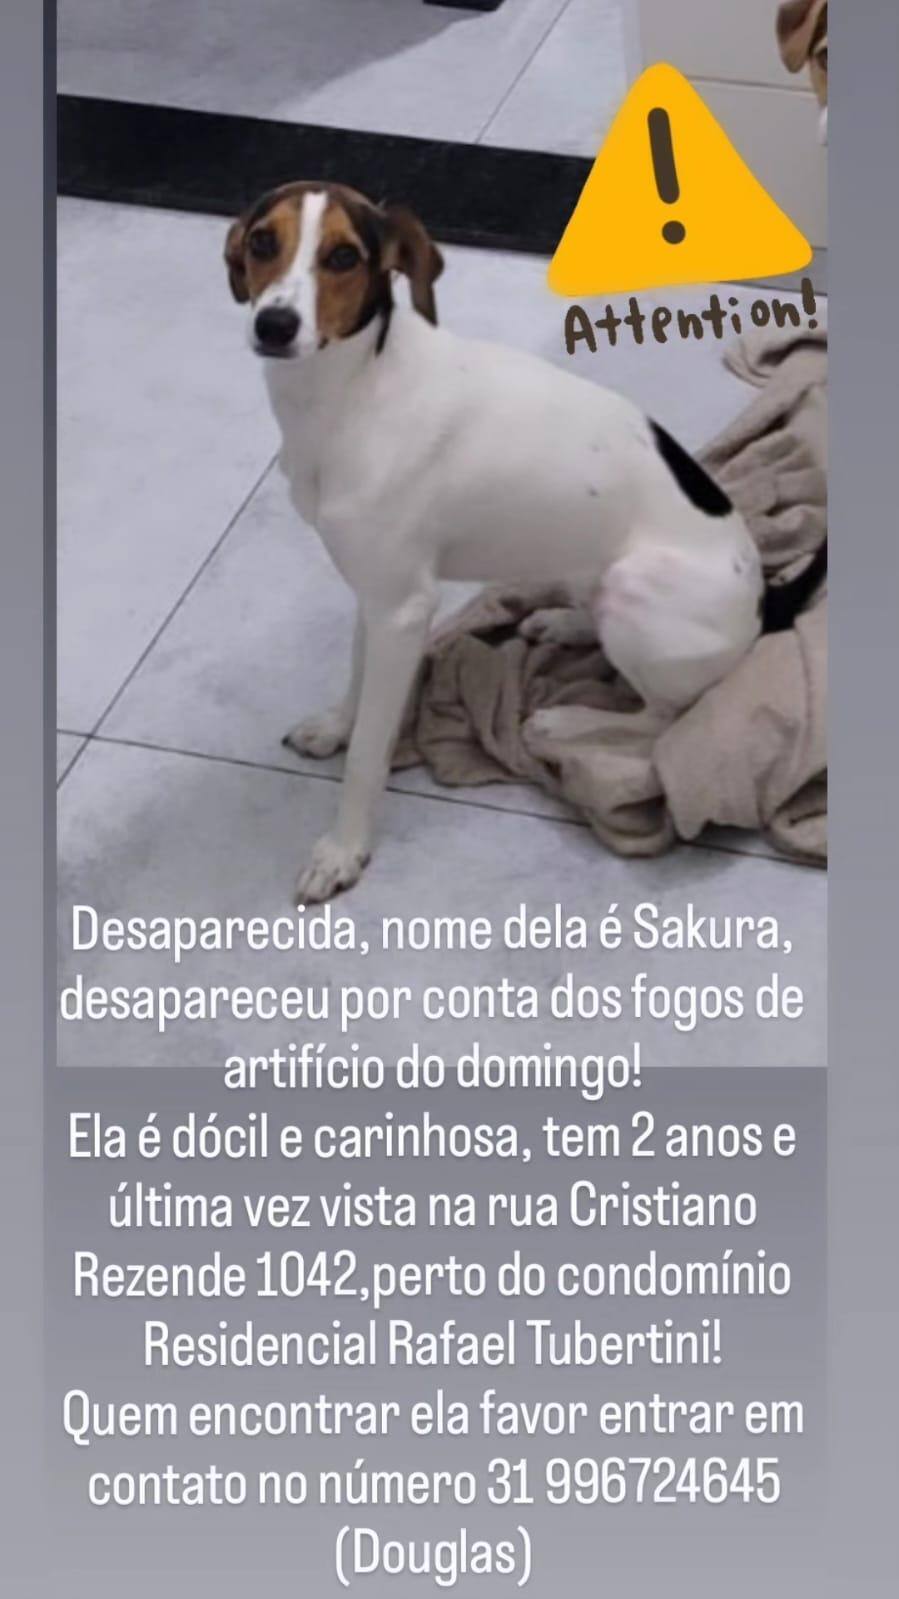 Sakura está desaparecida no bairro Bonsucesso, na região do Barreiro, em BH